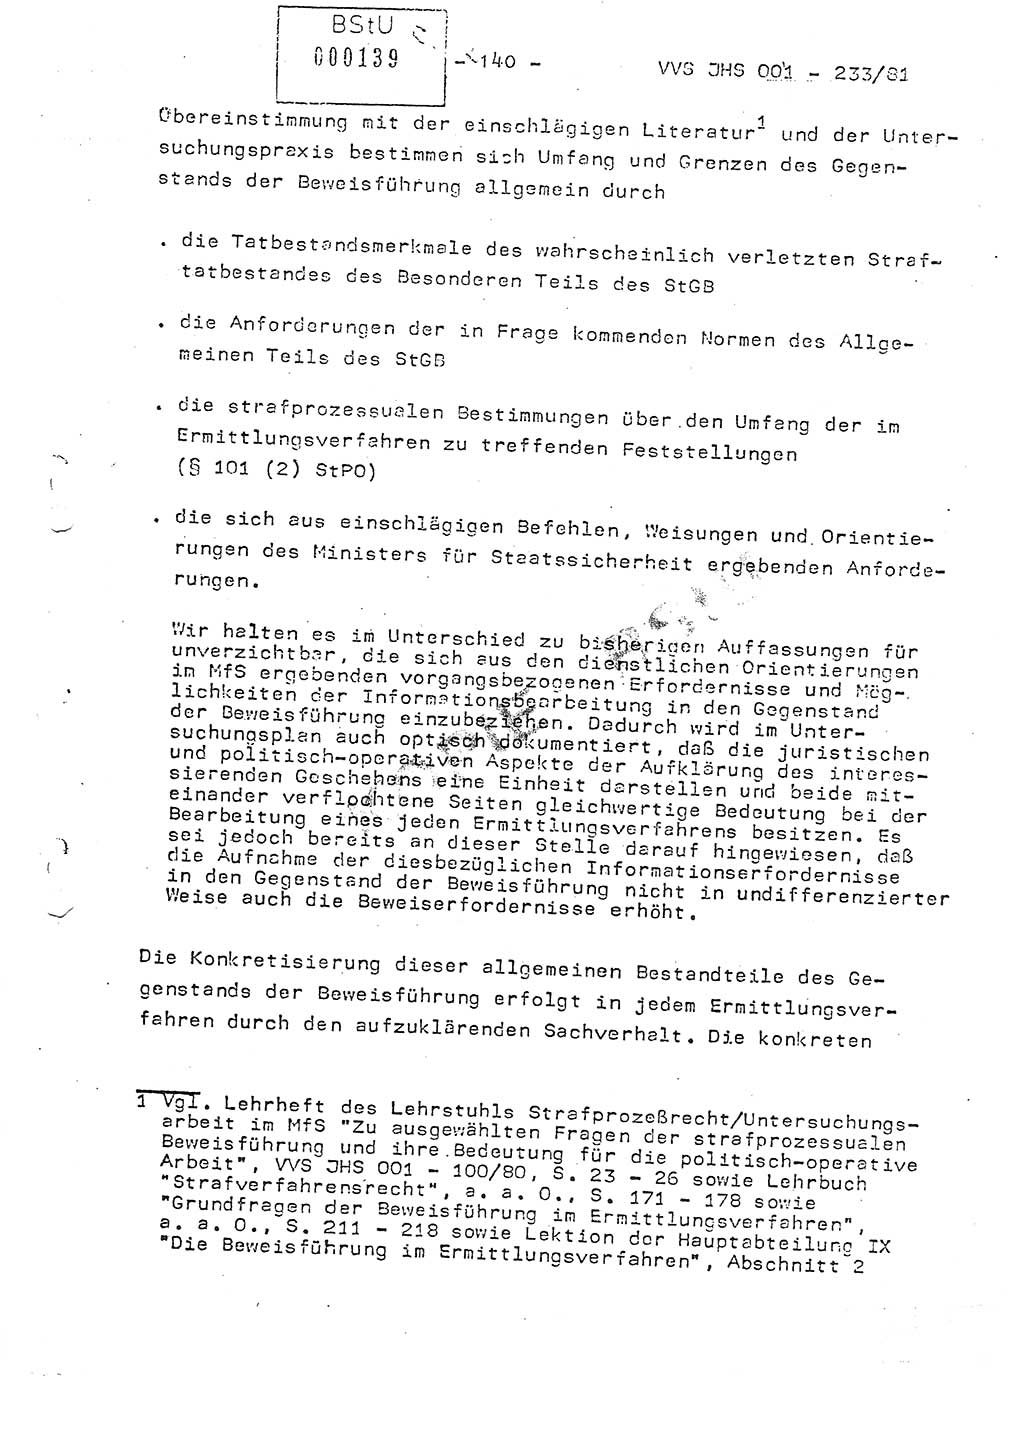 Dissertation Oberstleutnant Horst Zank (JHS), Oberstleutnant Dr. Karl-Heinz Knoblauch (JHS), Oberstleutnant Gustav-Adolf Kowalewski (HA Ⅸ), Oberstleutnant Wolfgang Plötner (HA Ⅸ), Ministerium für Staatssicherheit (MfS) [Deutsche Demokratische Republik (DDR)], Juristische Hochschule (JHS), Vertrauliche Verschlußsache (VVS) o001-233/81, Potsdam 1981, Blatt 140 (Diss. MfS DDR JHS VVS o001-233/81 1981, Bl. 140)